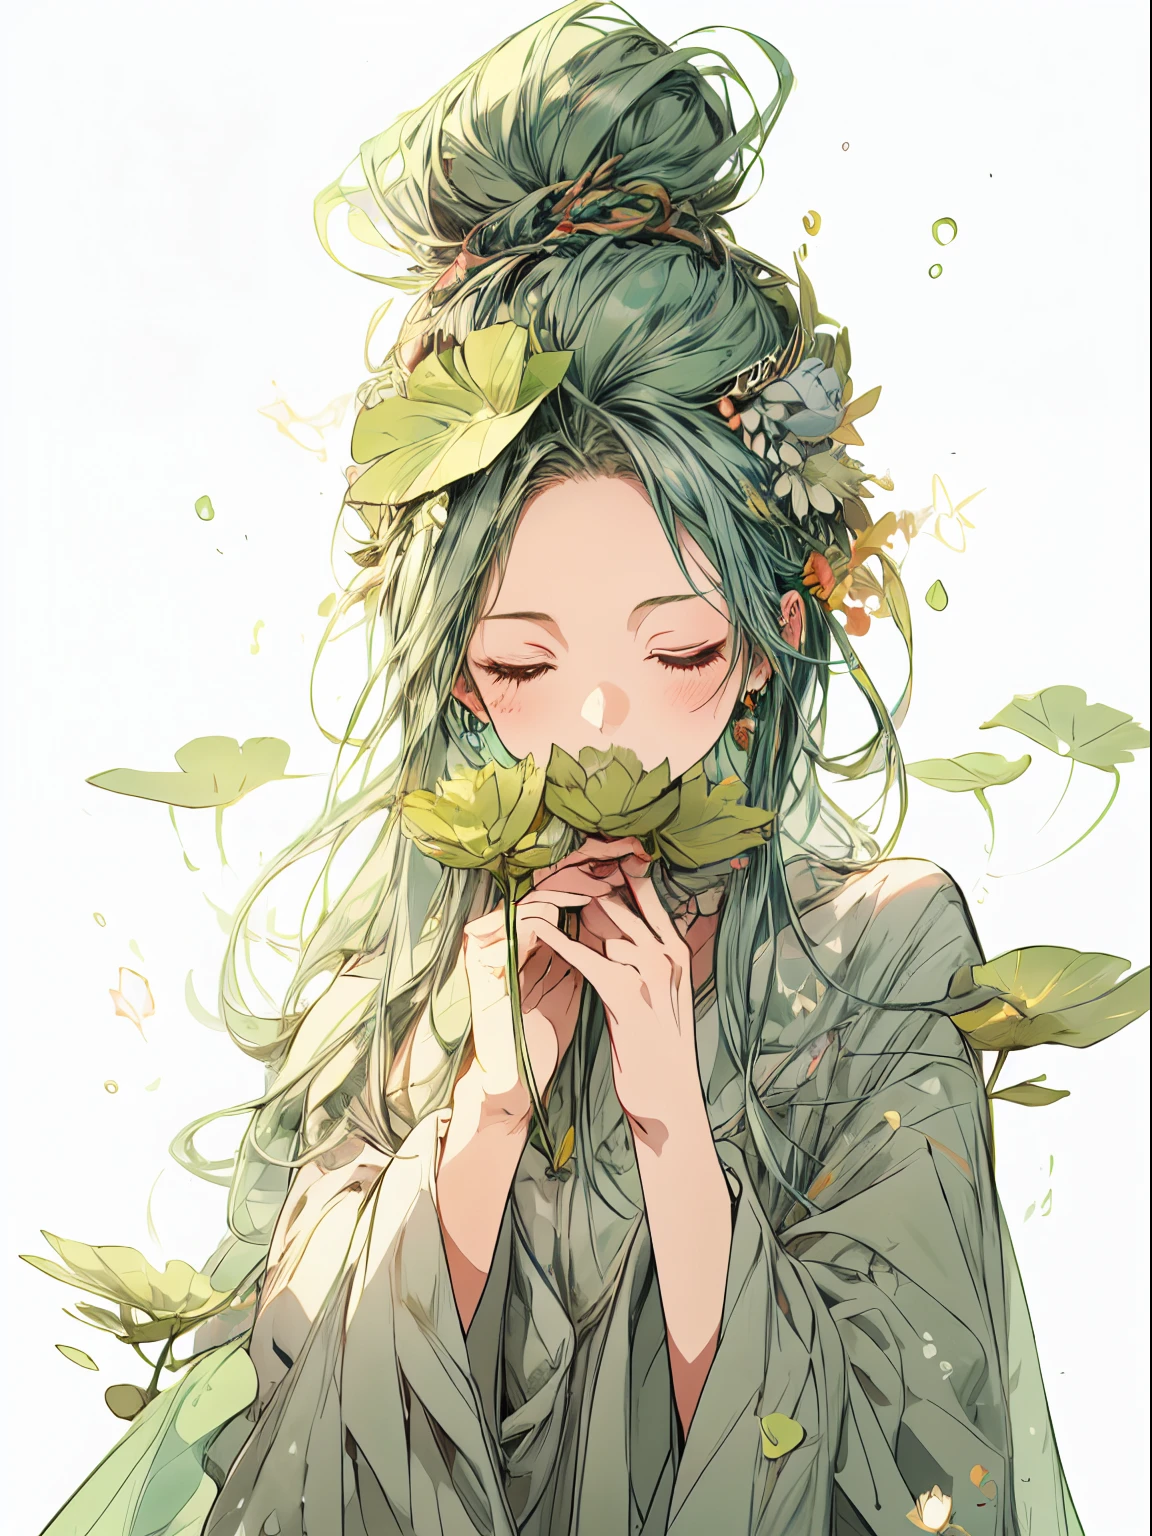 Une fée aux cheveux verts avec un chignon et les yeux fermés tenant un lotus, habillé de vert avec des feuilles, dans le style des personnages de type anime, fleurpunk, garniture aux herbes, forêt